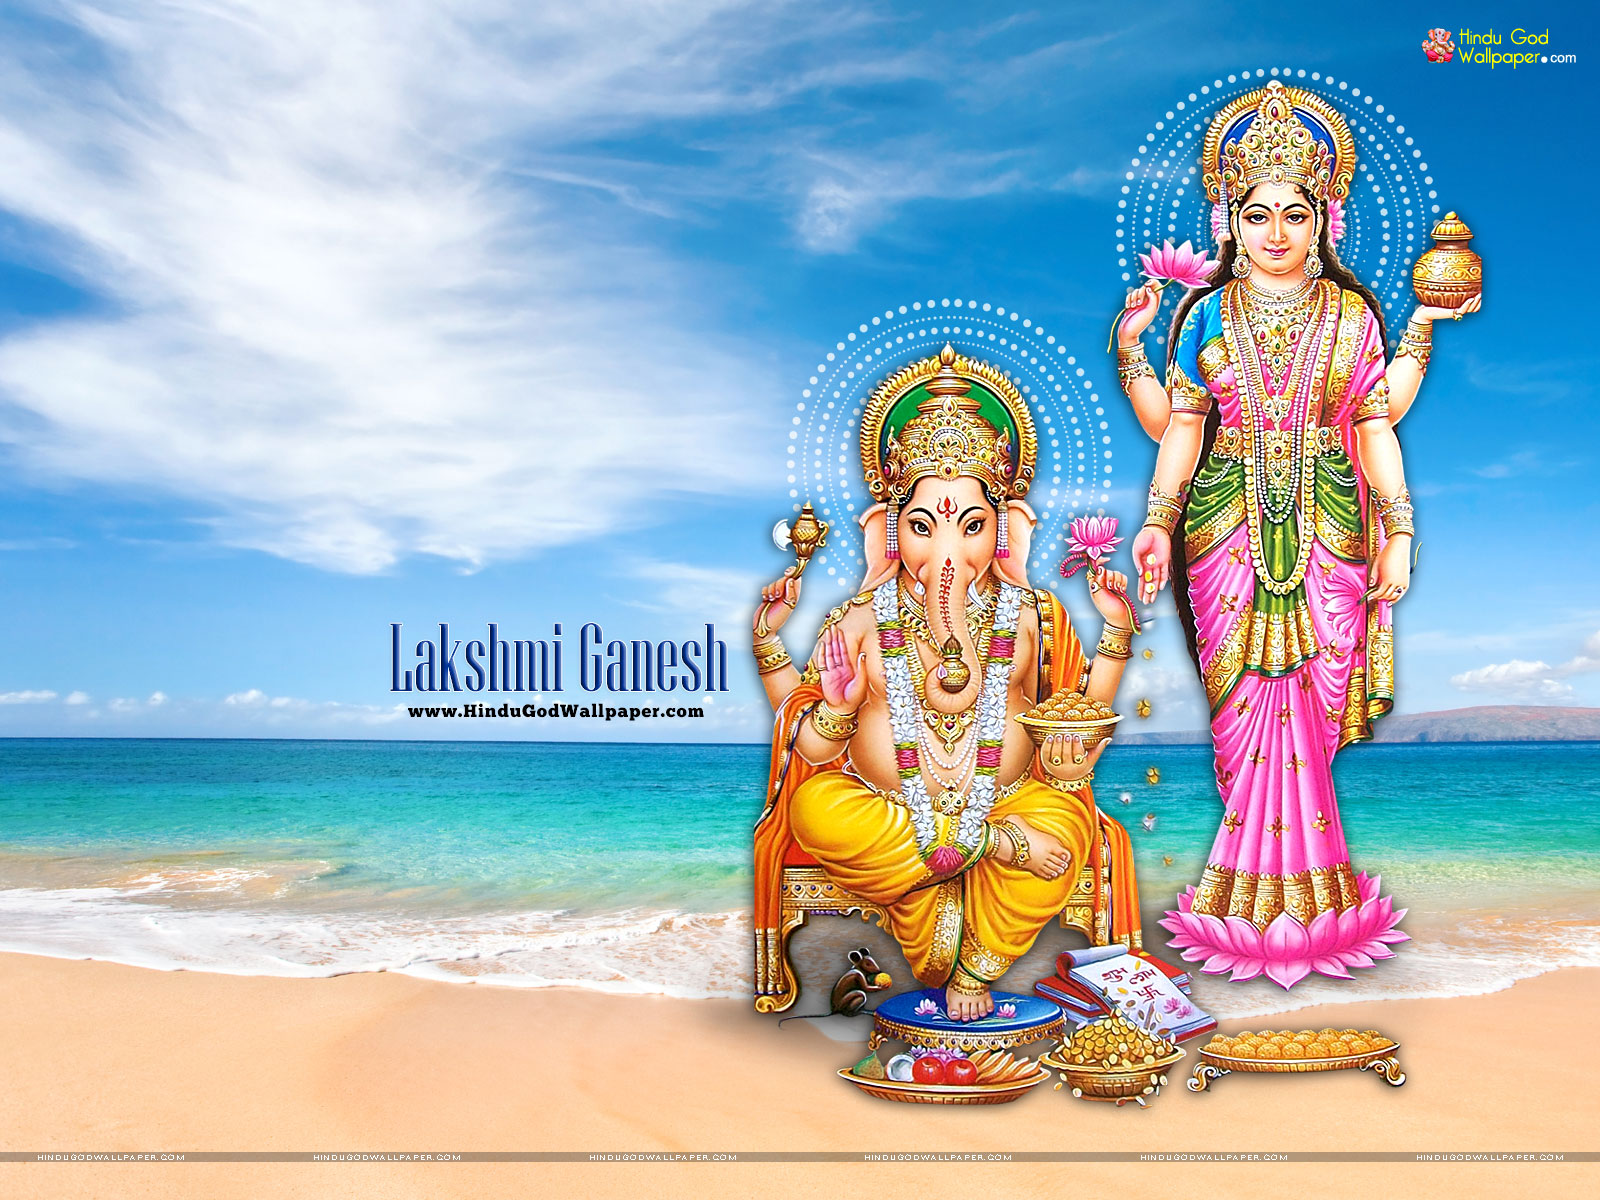 Goddess Lakshmi Ganesh